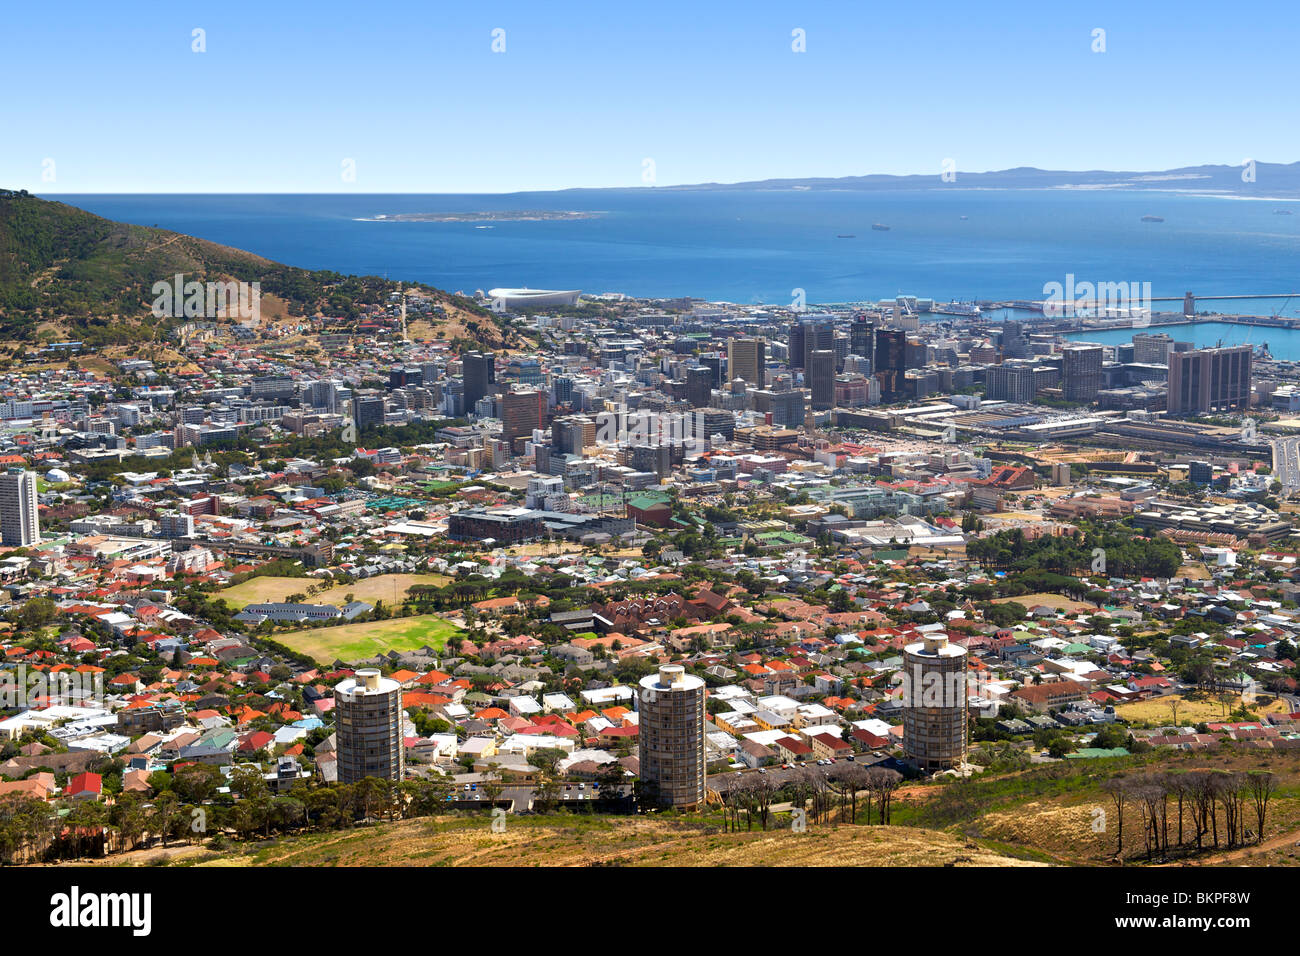 Vue sur la ville de Cape Town avec le nouveau FIFA 2010 / Green Point Stadium et Robben Island dans l'arrière-plan. Banque D'Images